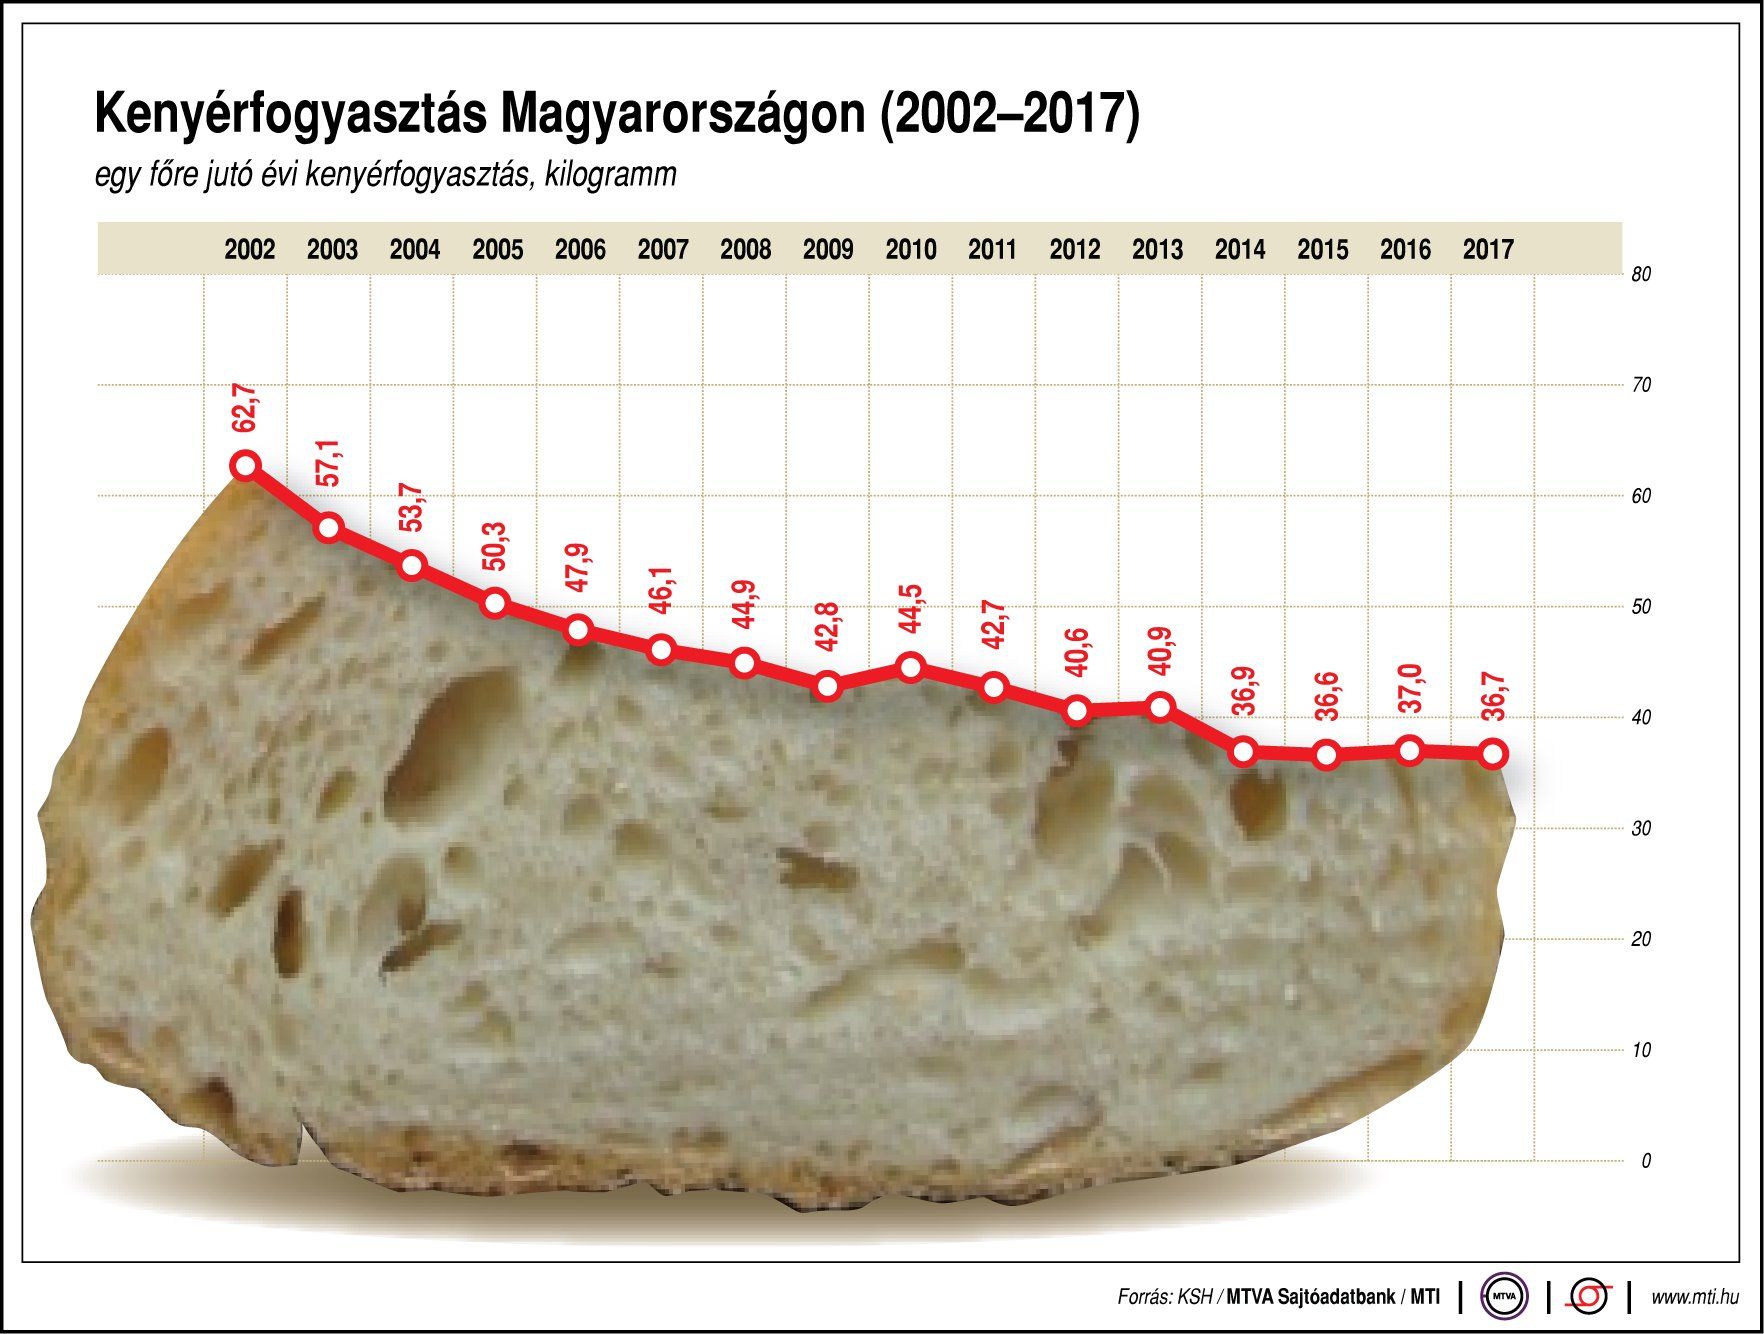 Mindennapi kenyerünket add meg nekünk ma - évente 36kg kenyeret eszünk